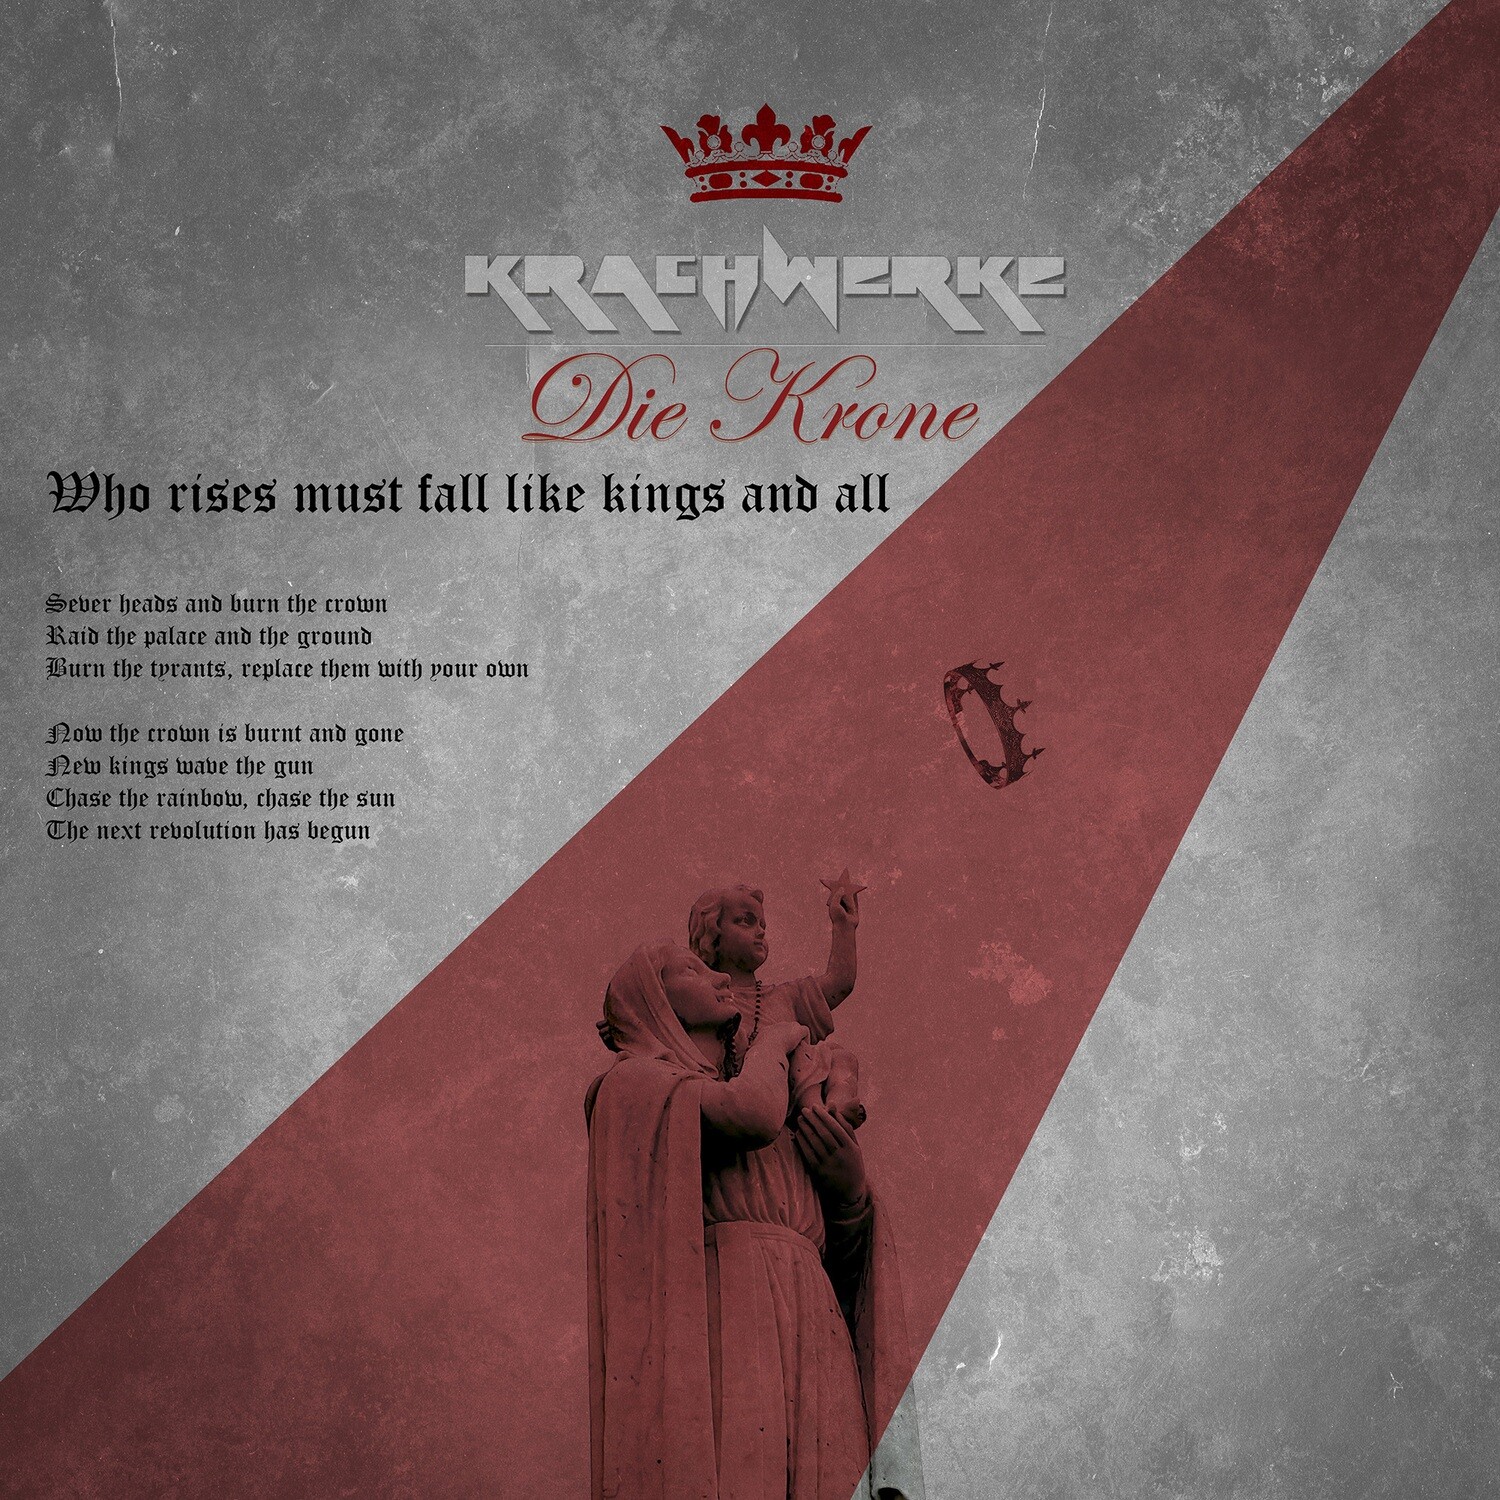 Krachwerke - Die Krone - Who rises must fall like kings and all - SINGLE Digital Download